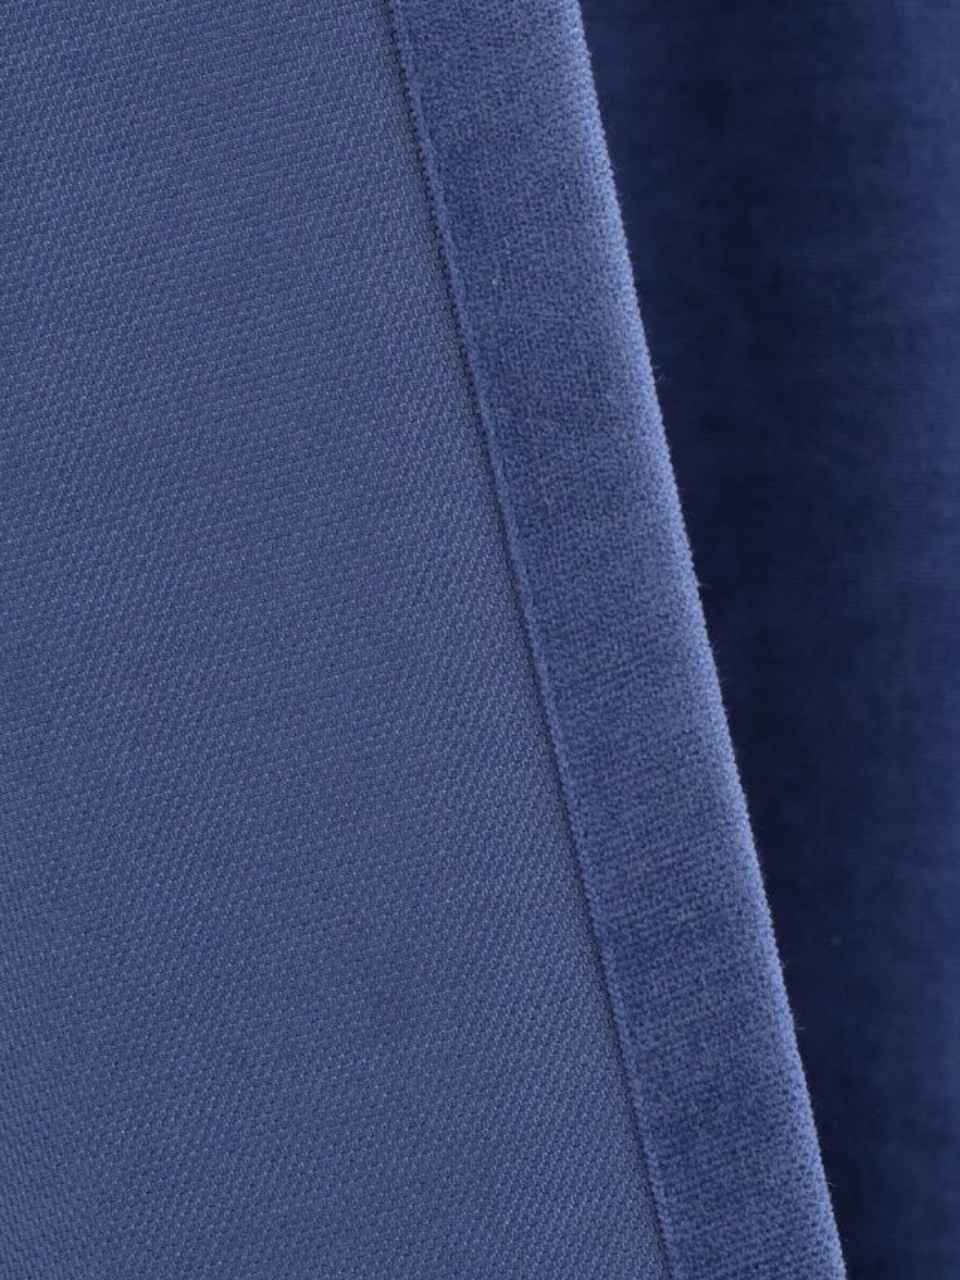 Портьеры Канвас светло-синий - 600 ₽, заказать онлайн.